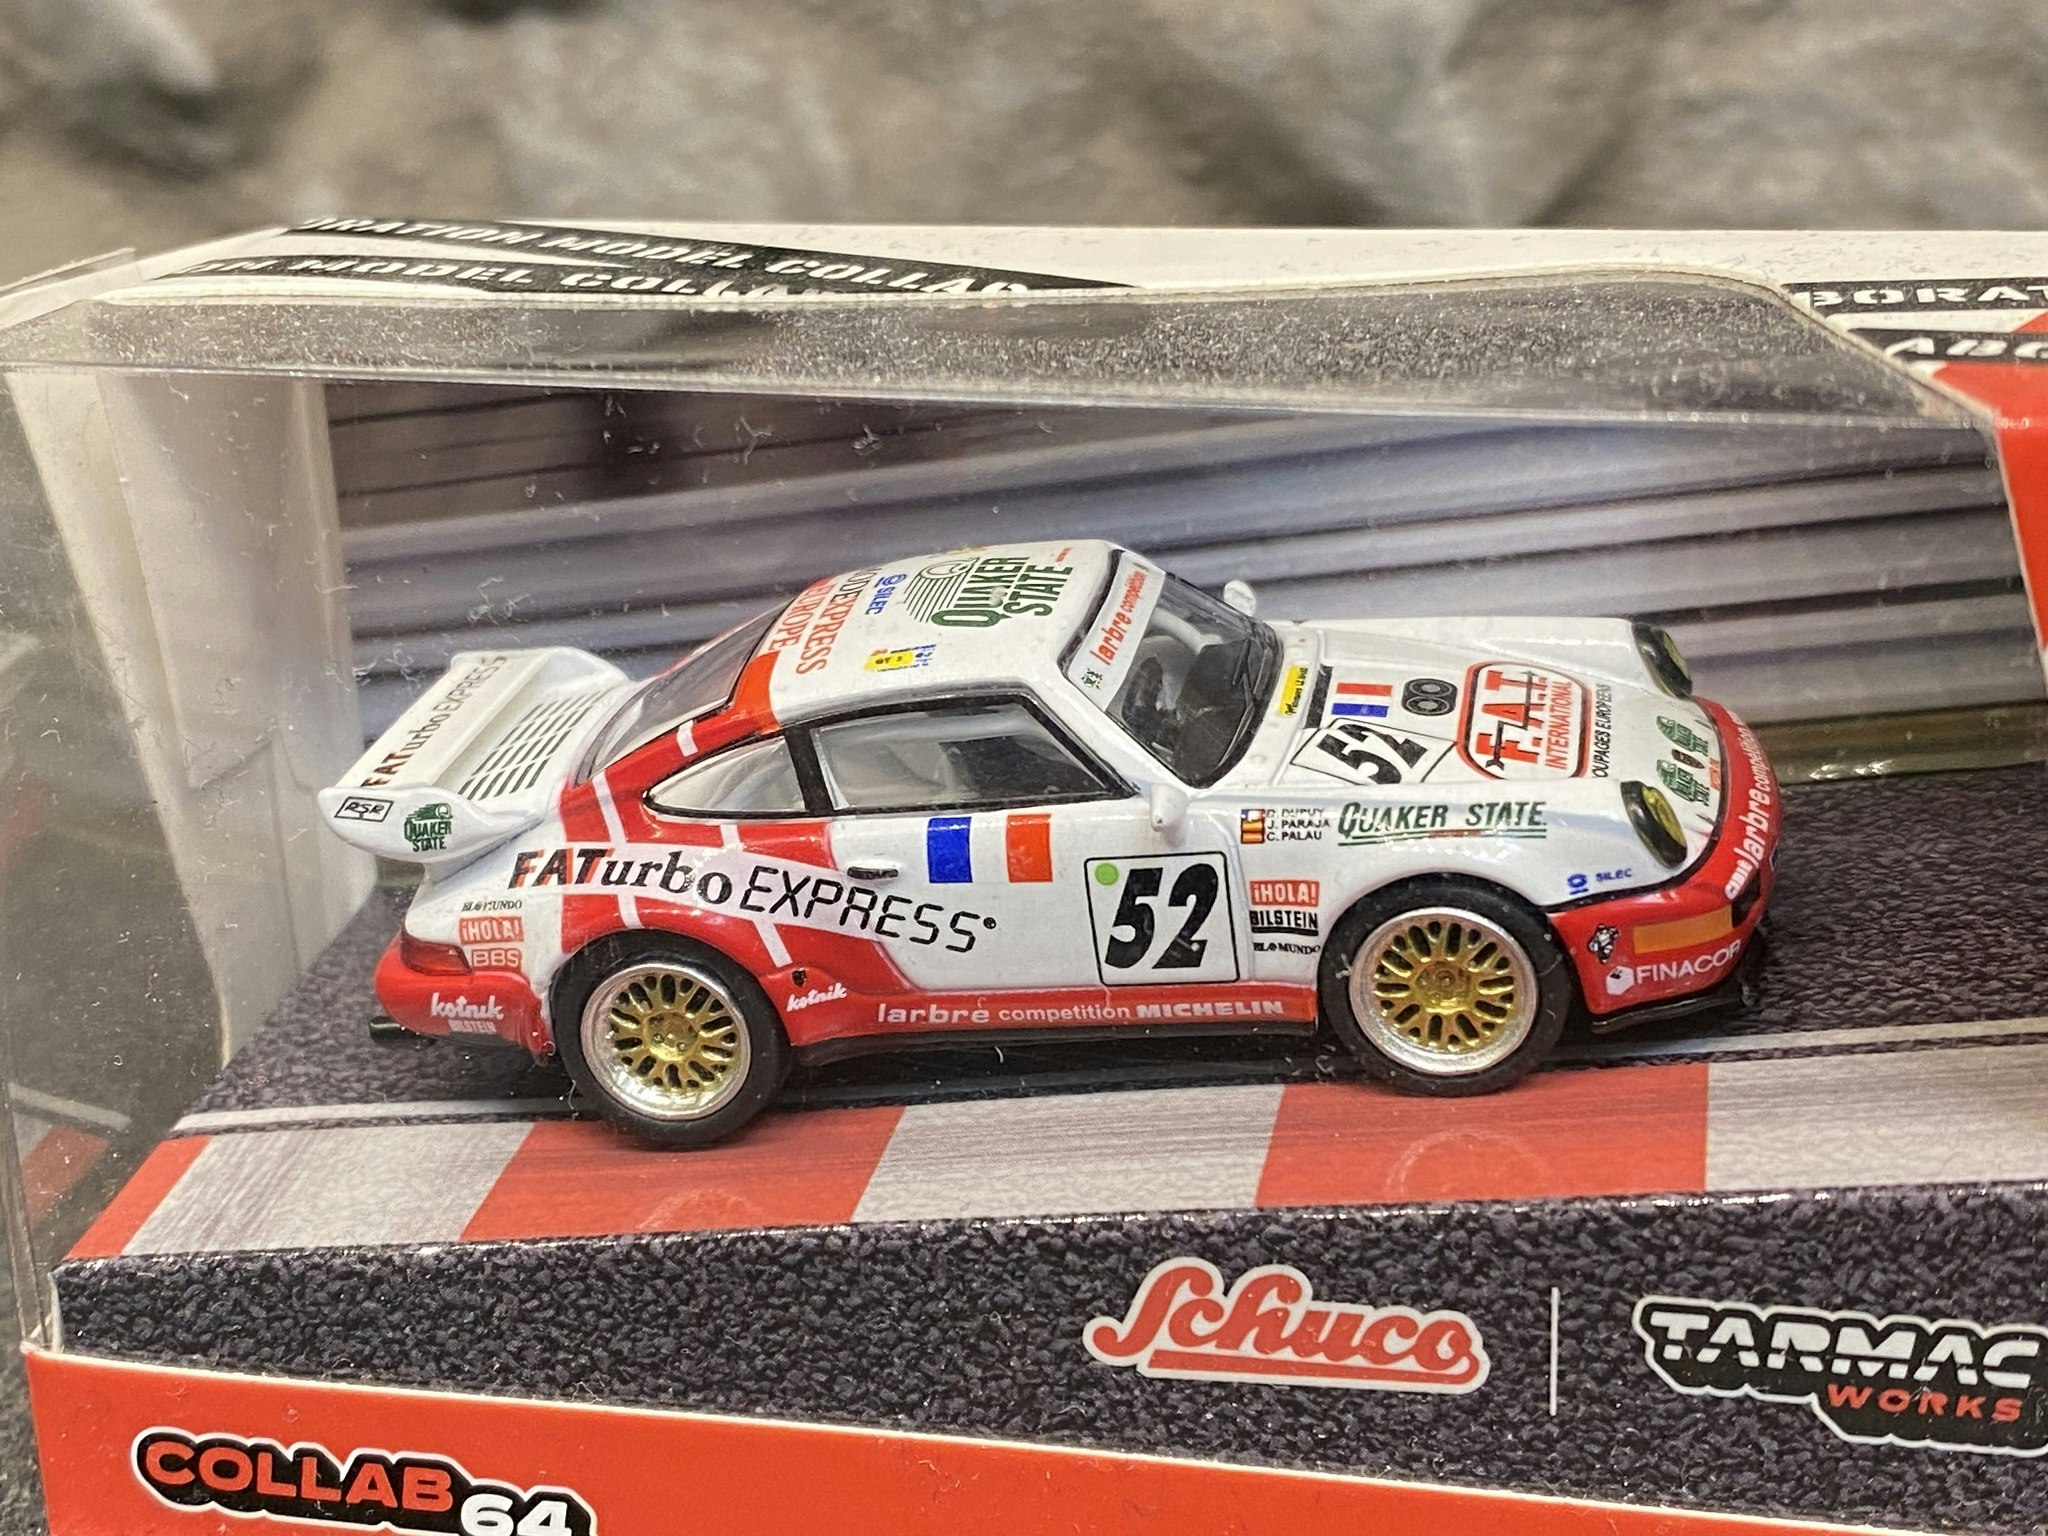 Skala 1/64 Porsche 911 RSR 3,8, Le Mans 1994 - COLLAB64 Tarmac/Schuco